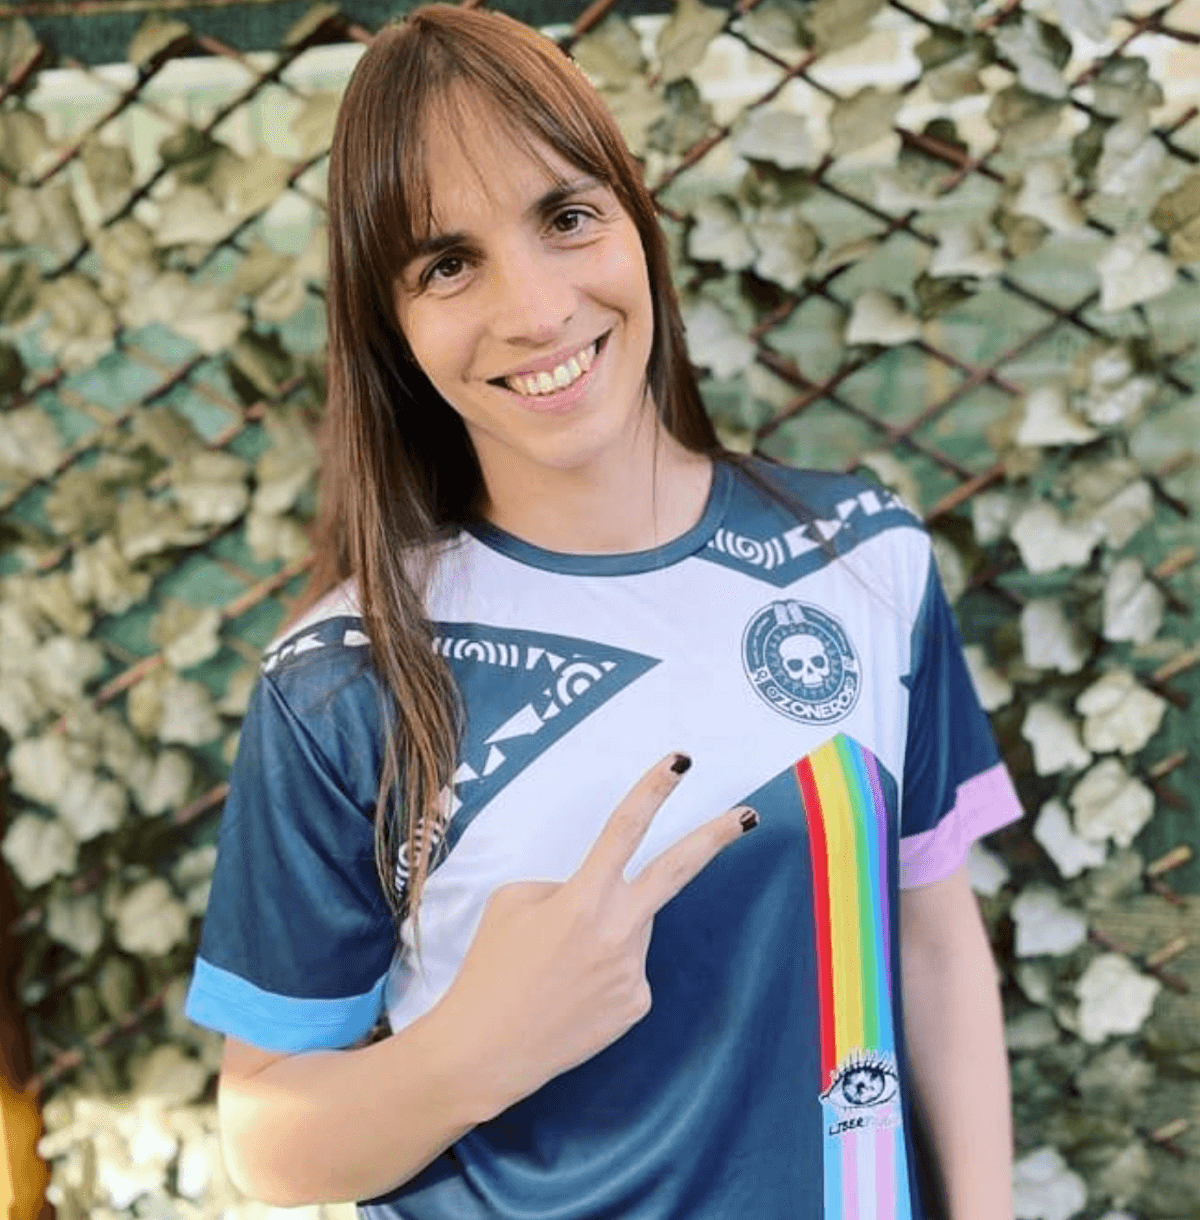 Alba Palacios, la prima storica calciatrice trans* di Spagna: "Rimpiango non aver fatto prima coming out" - Alba Palacios calciatrice trans - Gay.it